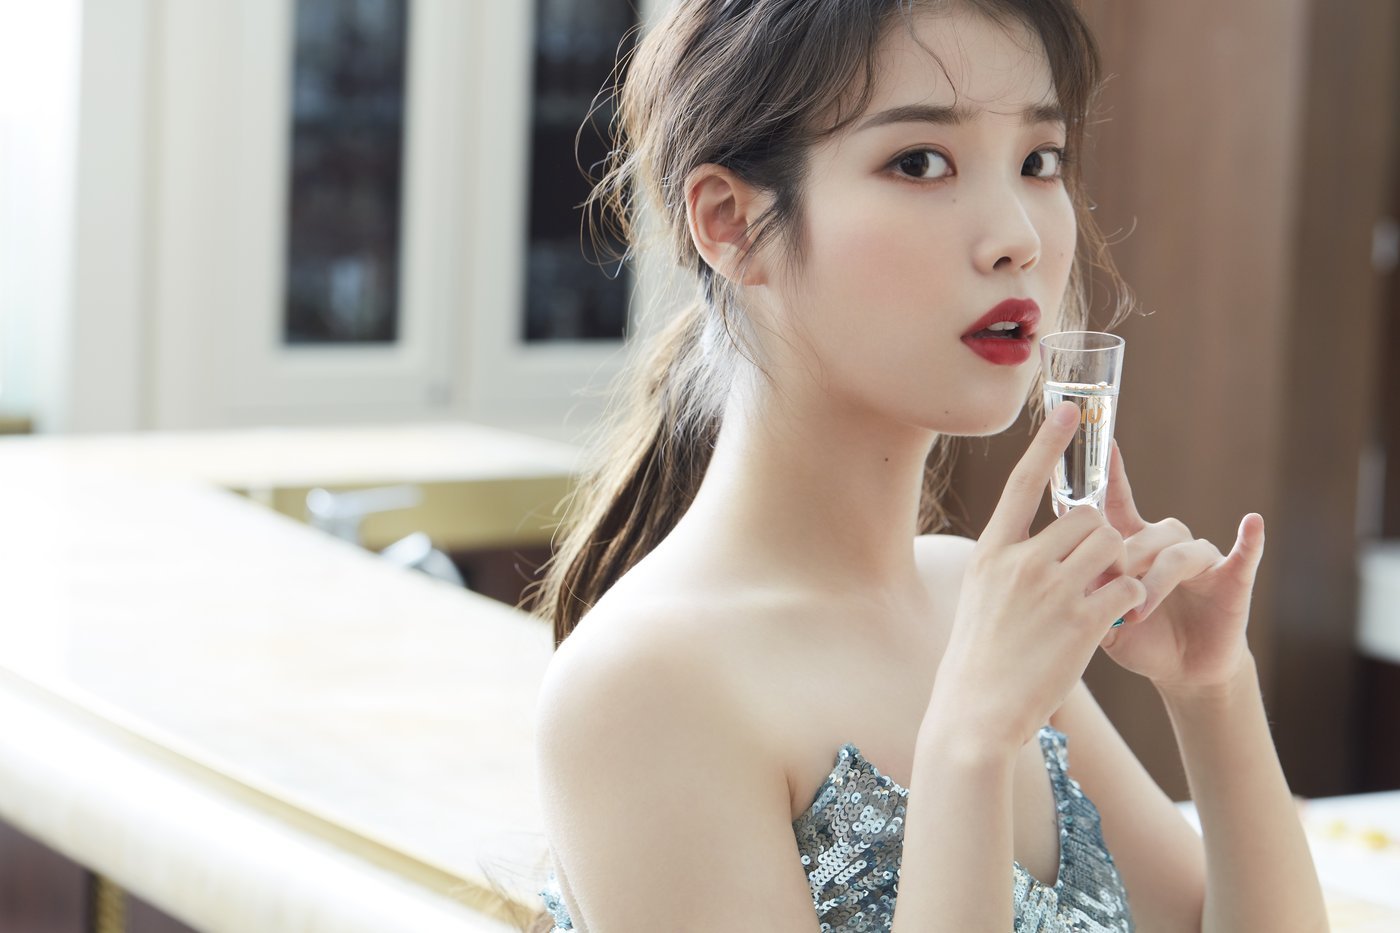 IU for Chamisul Secret Bar x Vogue Korea - Celebrity Photos 